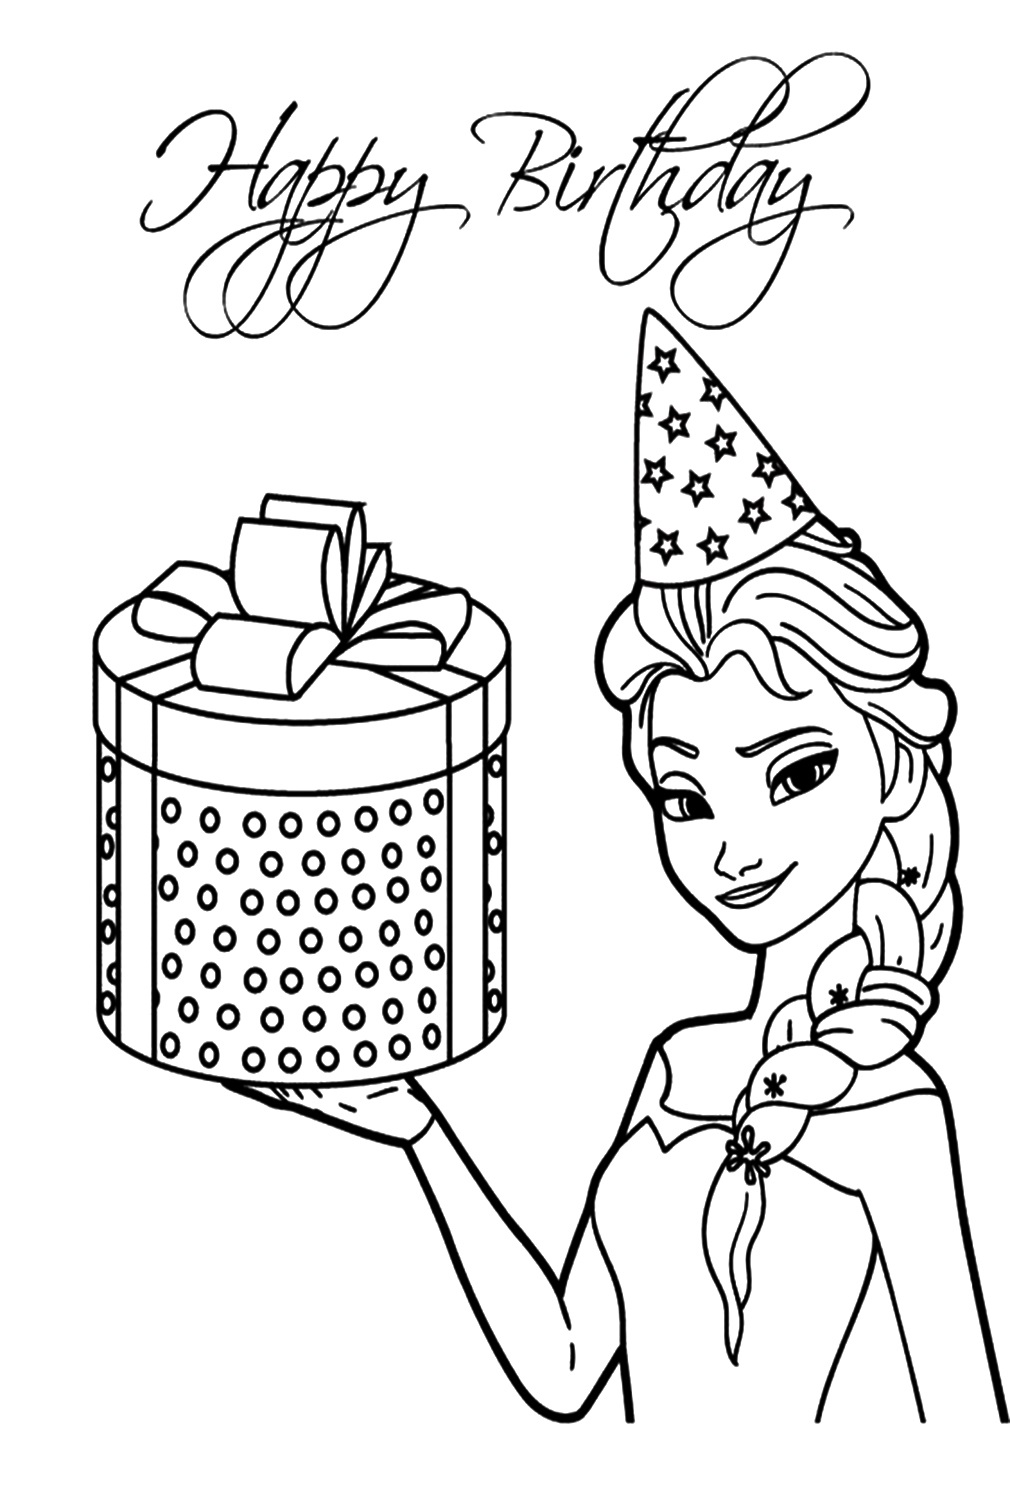 Elsa feliz aniversário para colorir